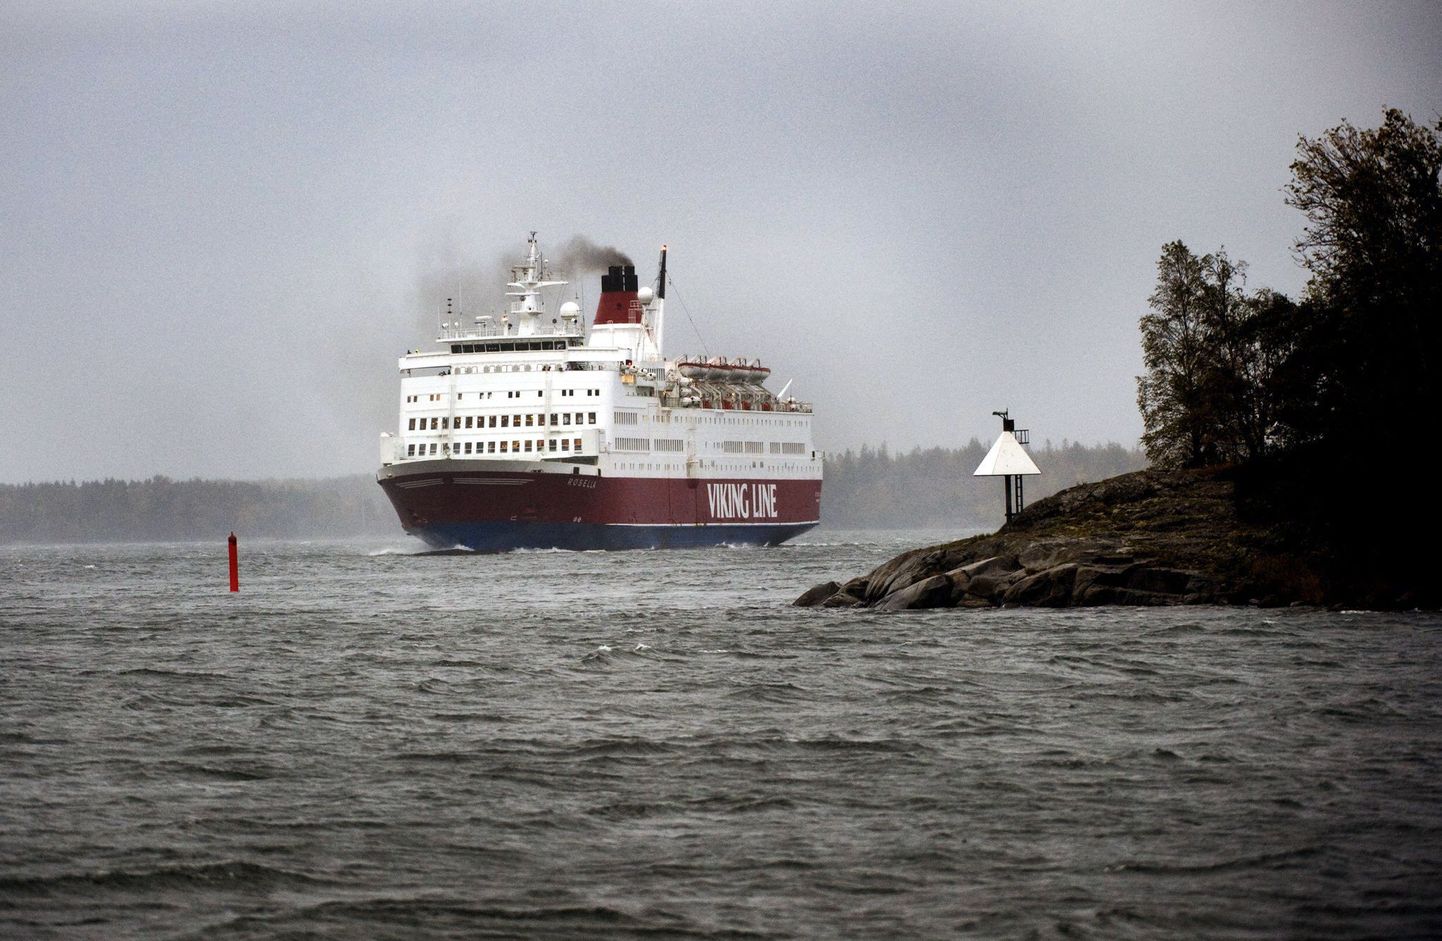 Soome turvaekspertide arvates ei ole Läänemerel seilavad reisilaevad võimaliku terrorismiohu vastu piisavalt kaitstud.